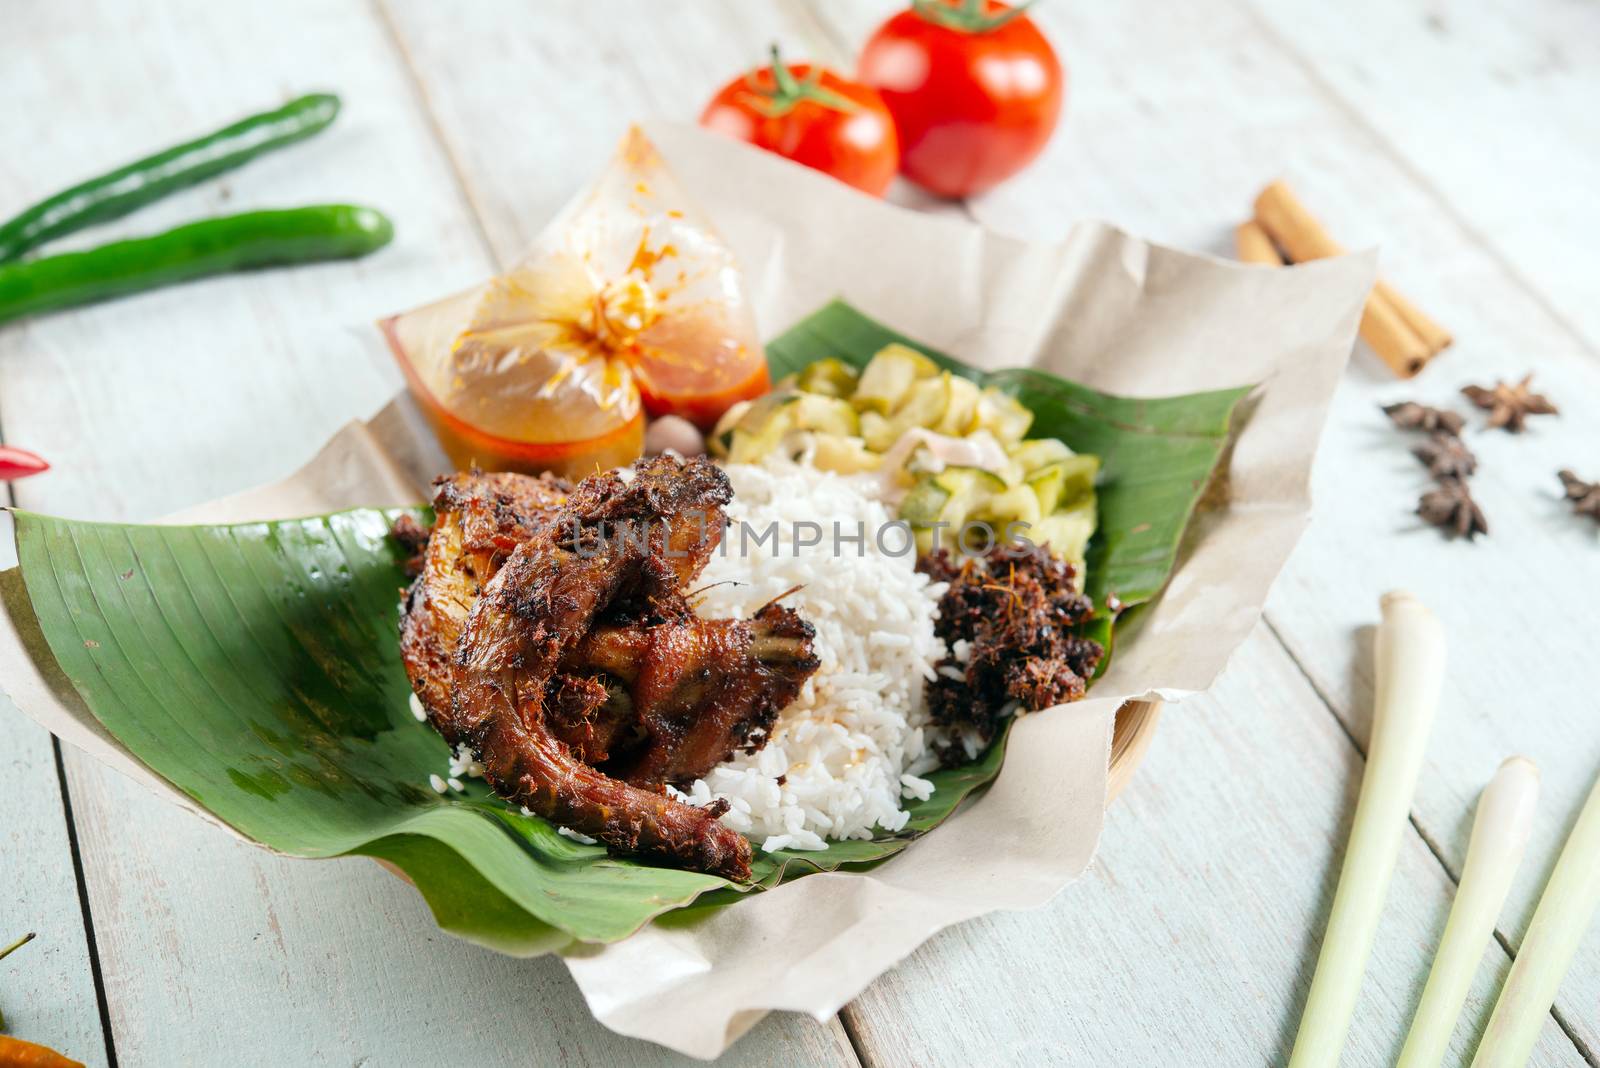 Nasi lemak kukus with quail, popular traditional Malay local food.